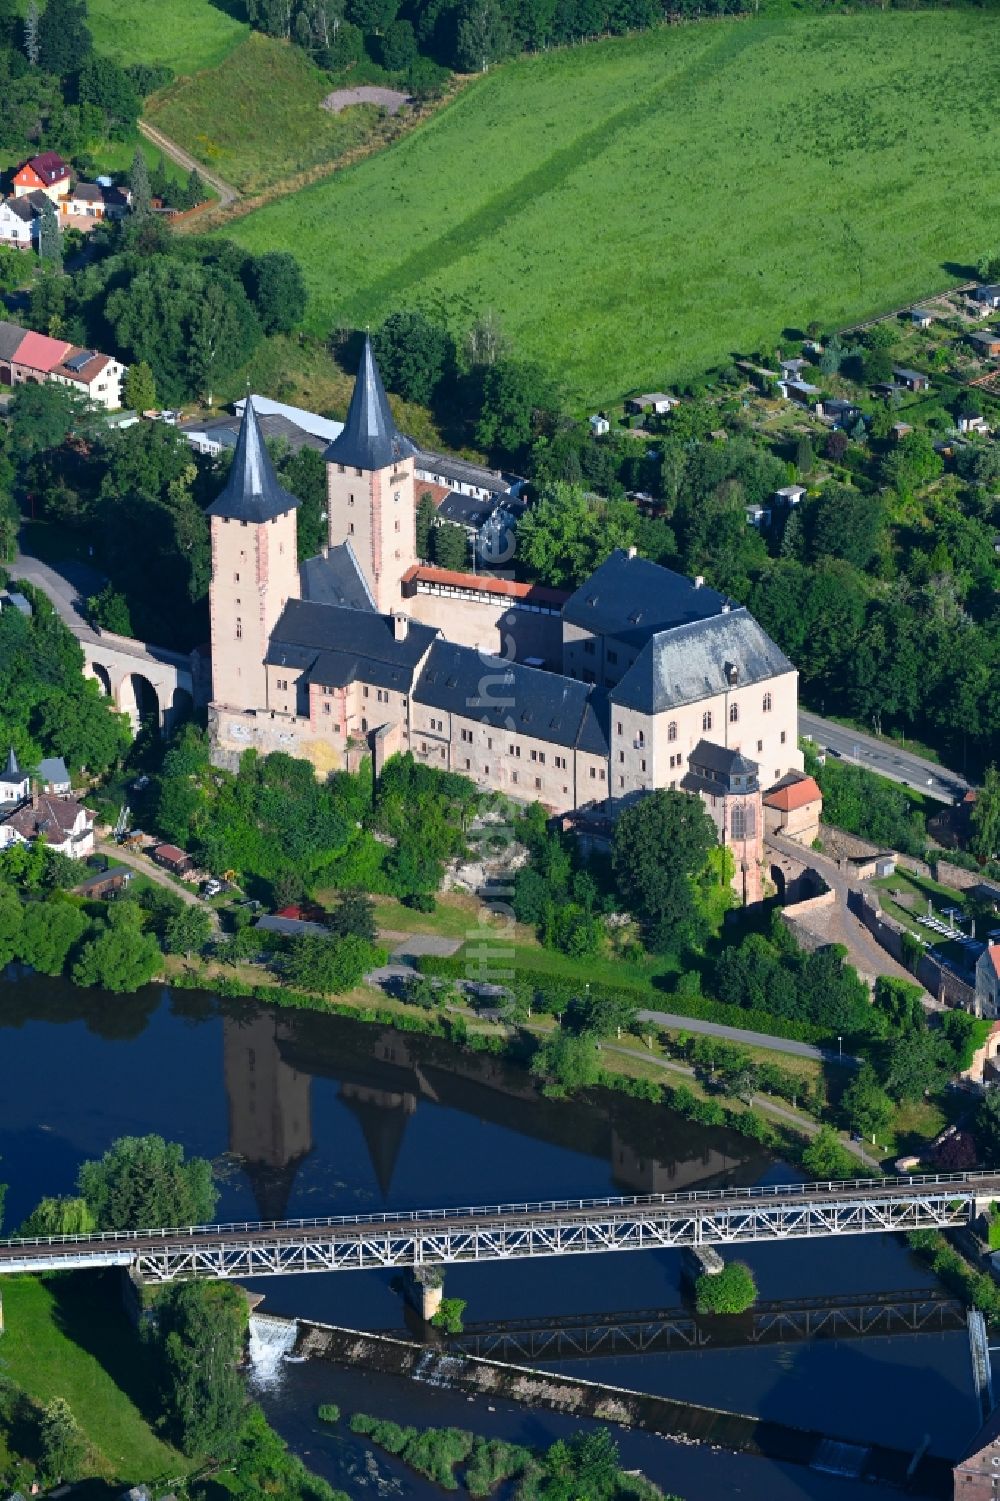 Luftbild Rochlitz - Burganlage des Schloss in Rochlitz im Bundesland Sachsen, Deutschland